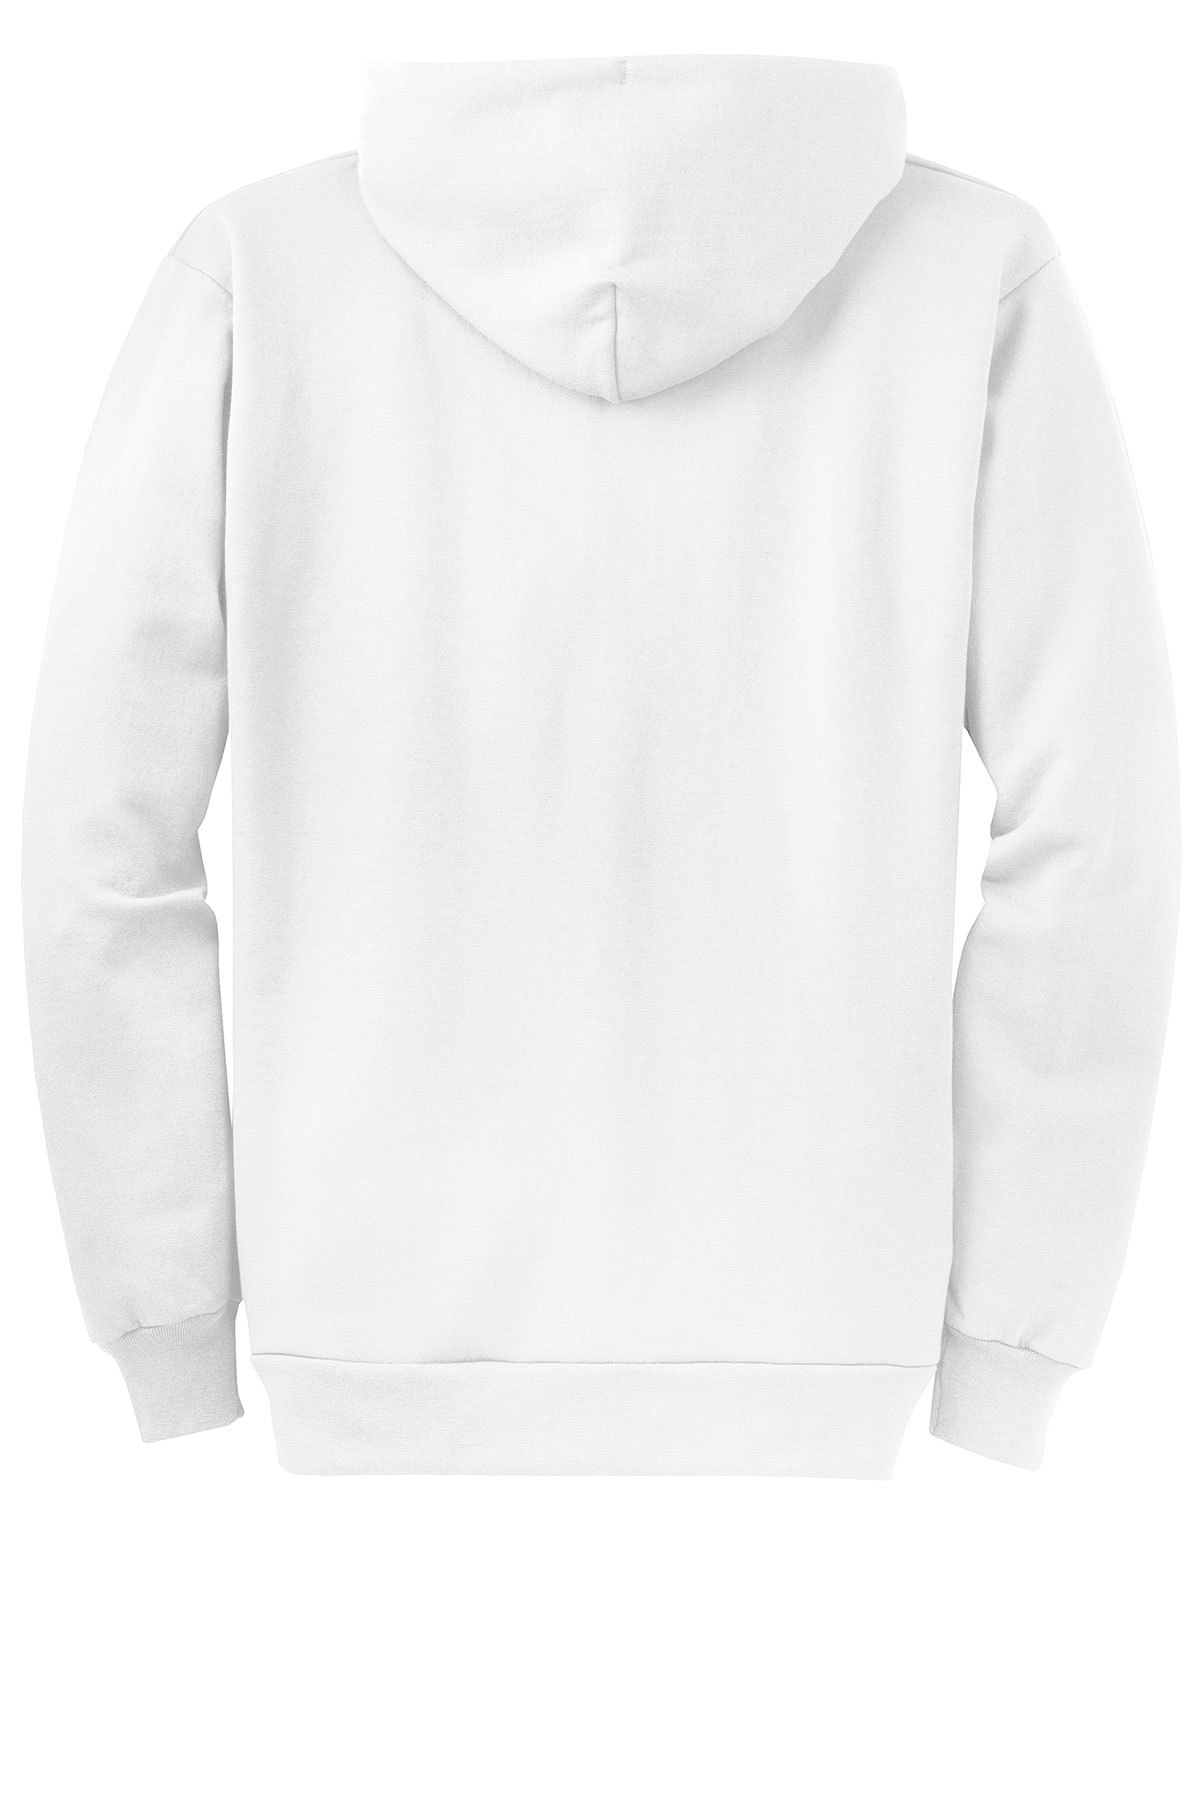 Port & Company Core Fleece Full-Zip Hooded Sweatshirt | Product | SanMar